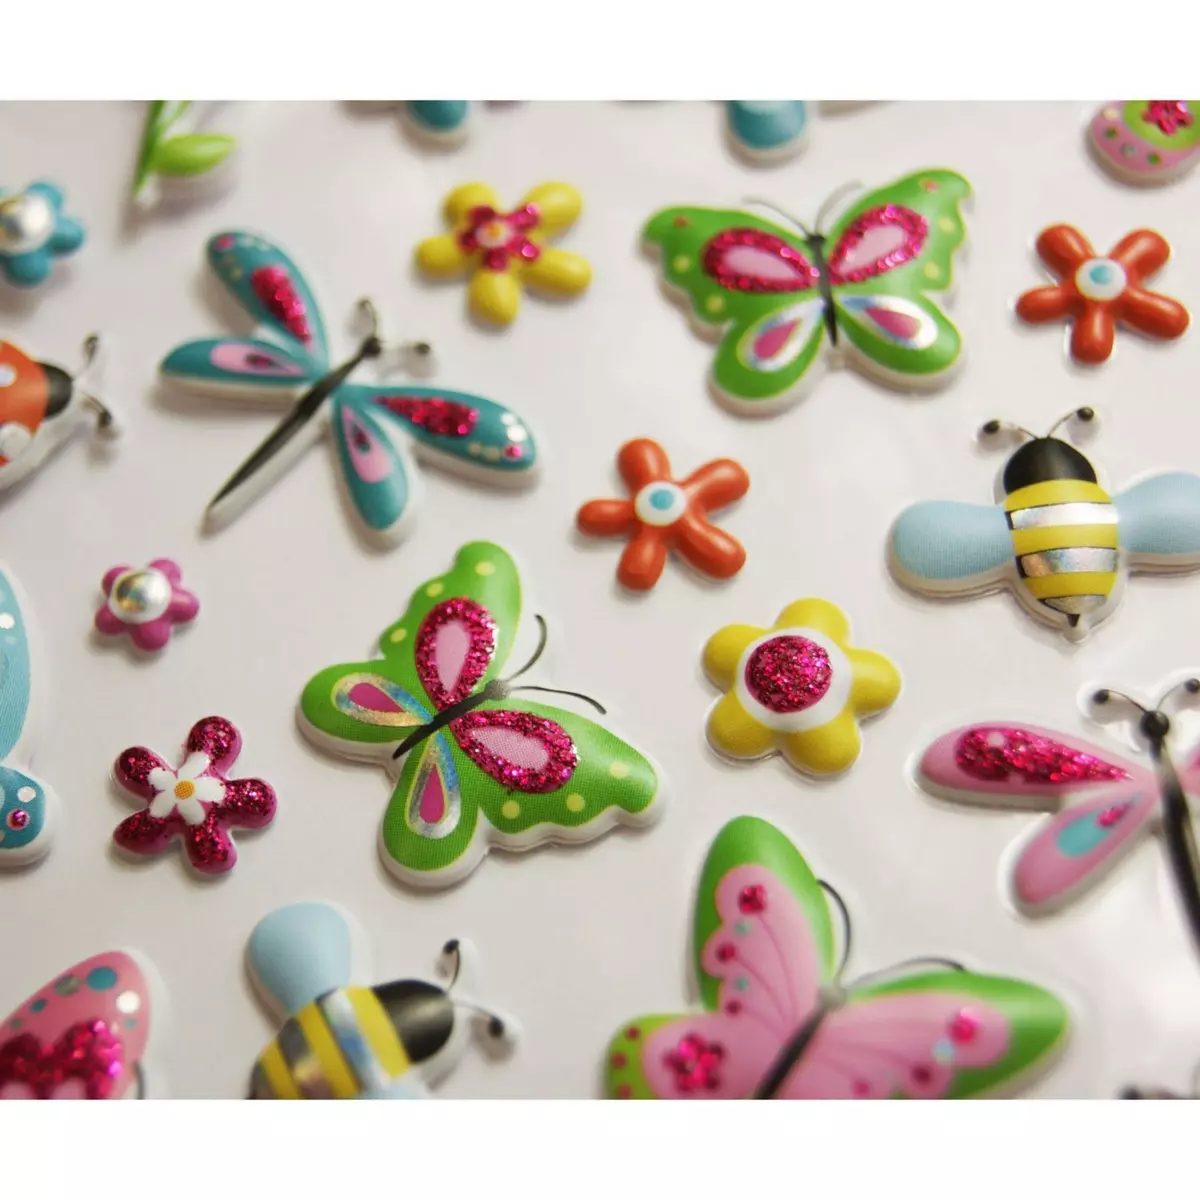  Autocollants réutilisables - Relief 3D - Papillons et fleurs - Paillettes